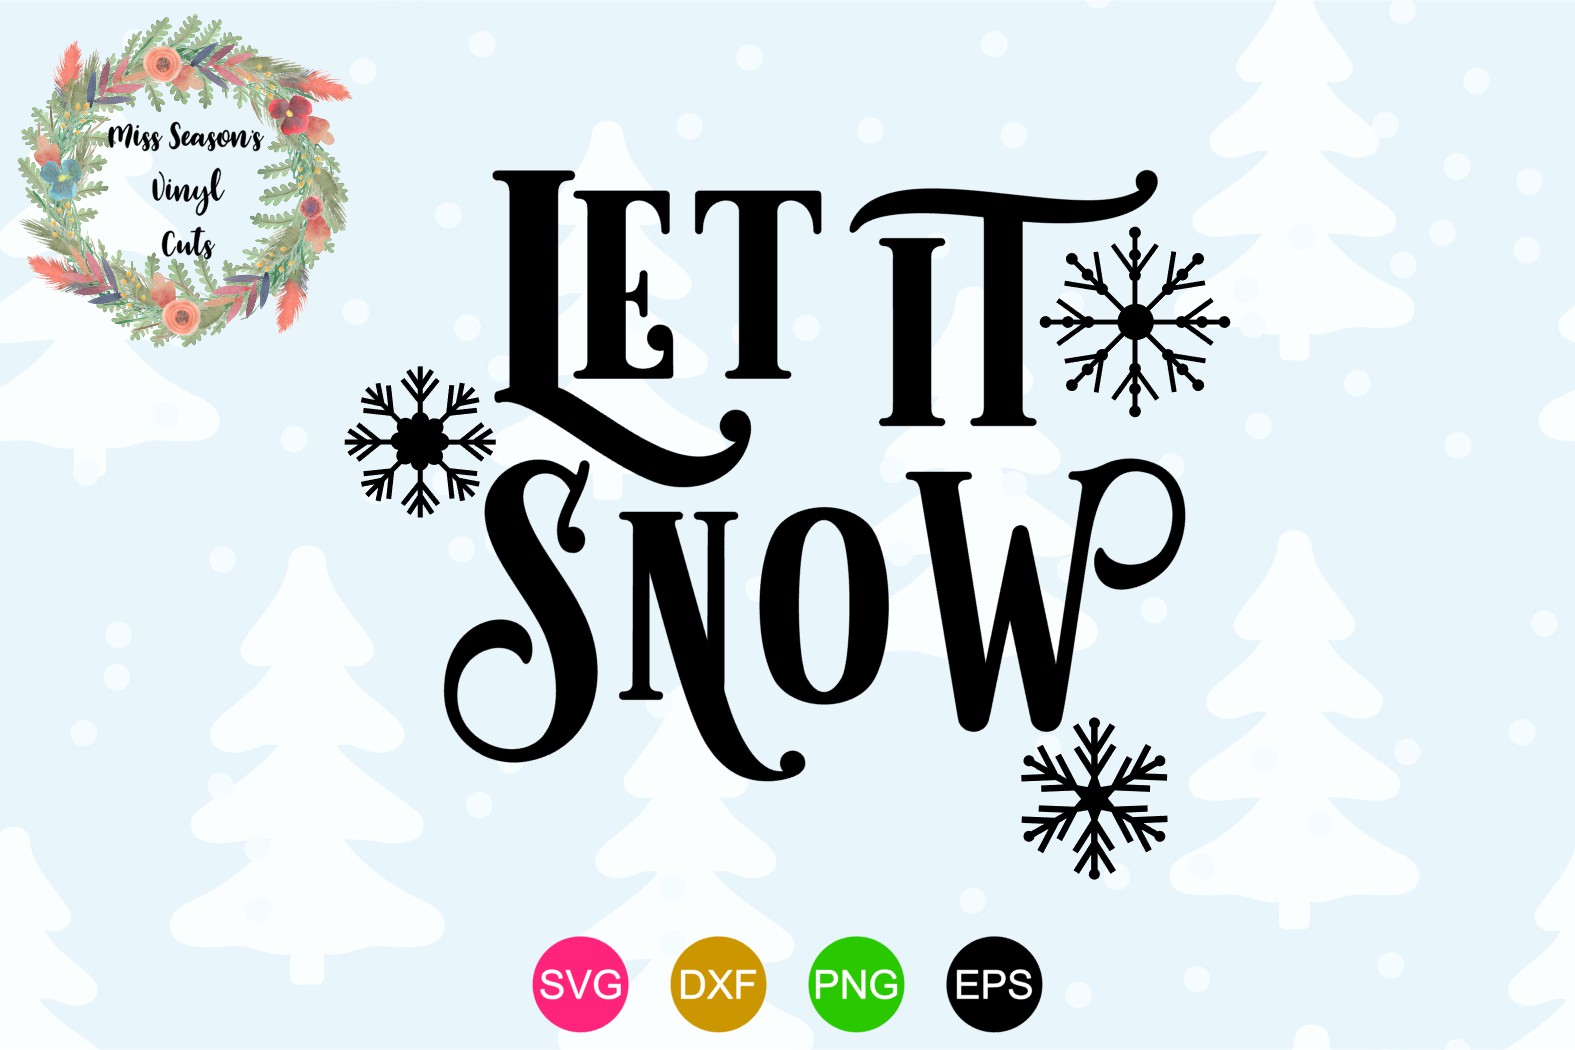 Let it Snow SVG - Christmas (320298) | Cut Files | Design Bundles